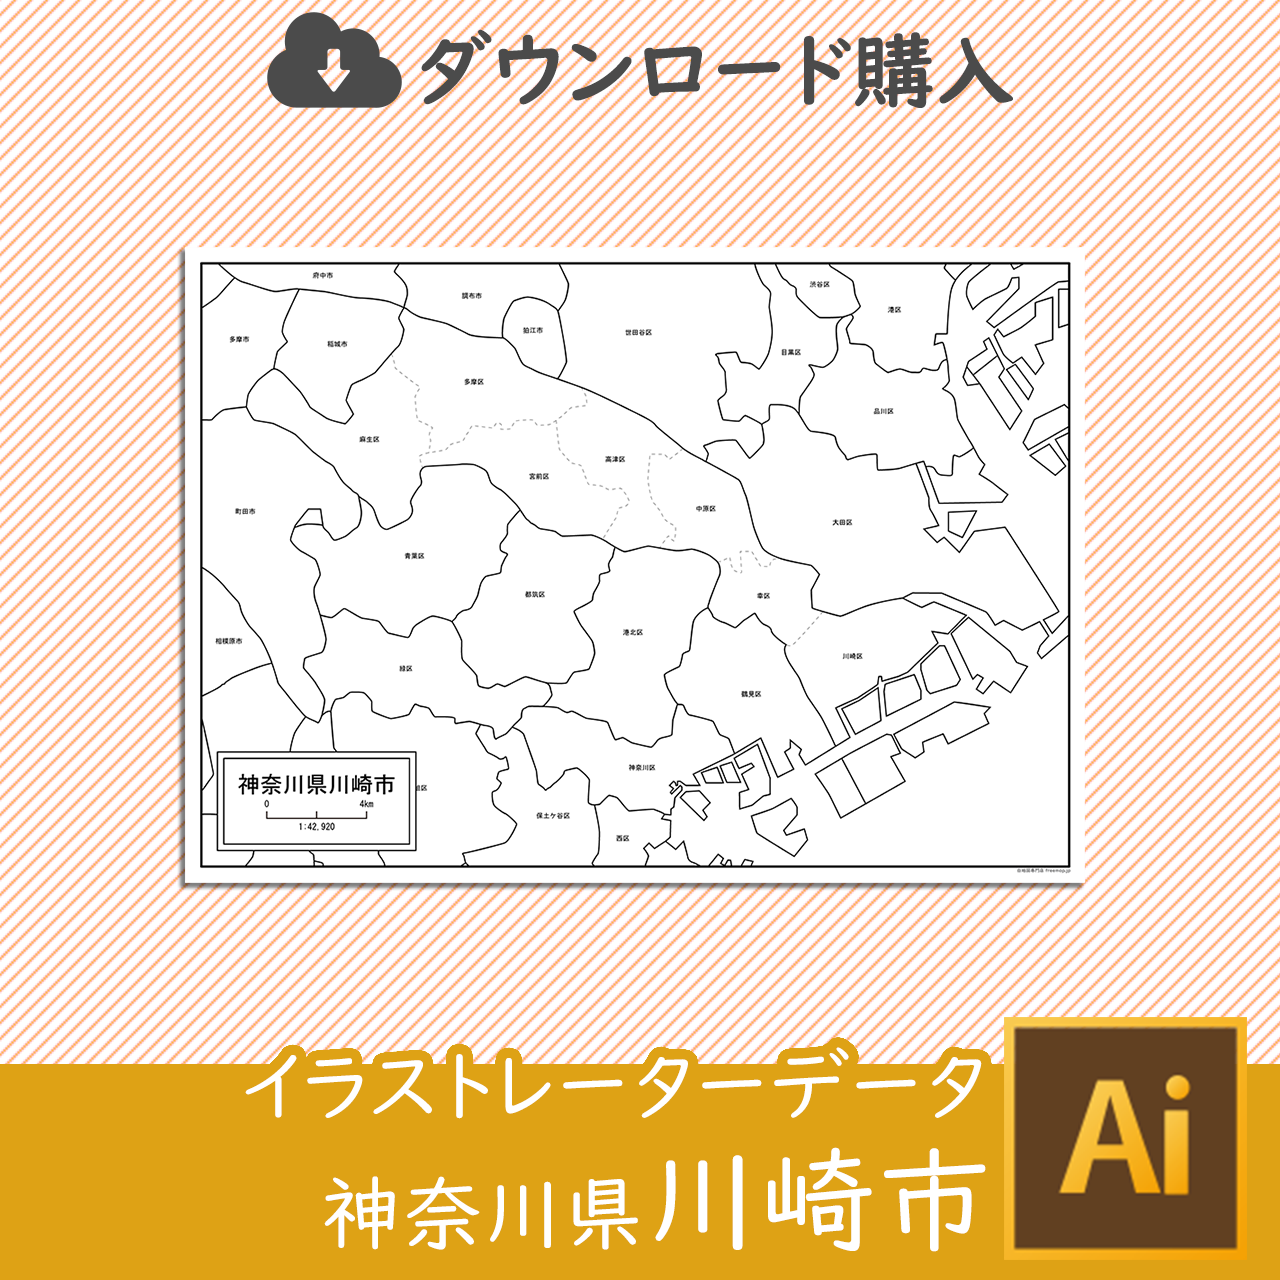 神奈川県川崎市のaiデータのサムネイル画像